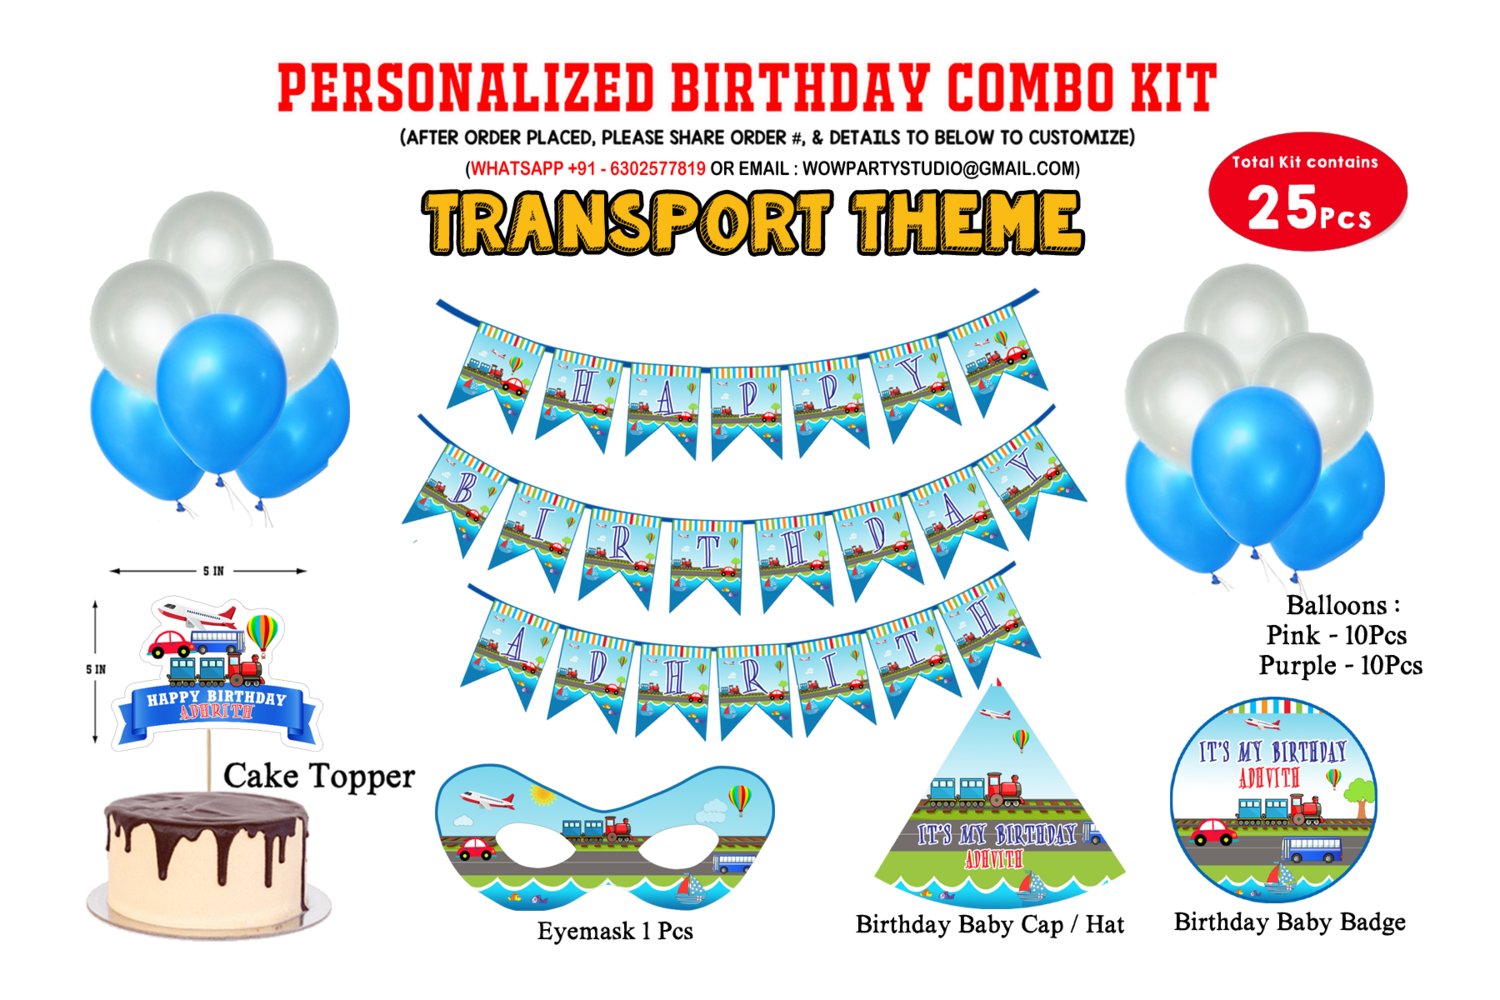 Transport Theme - Combo Kit 25Pcs